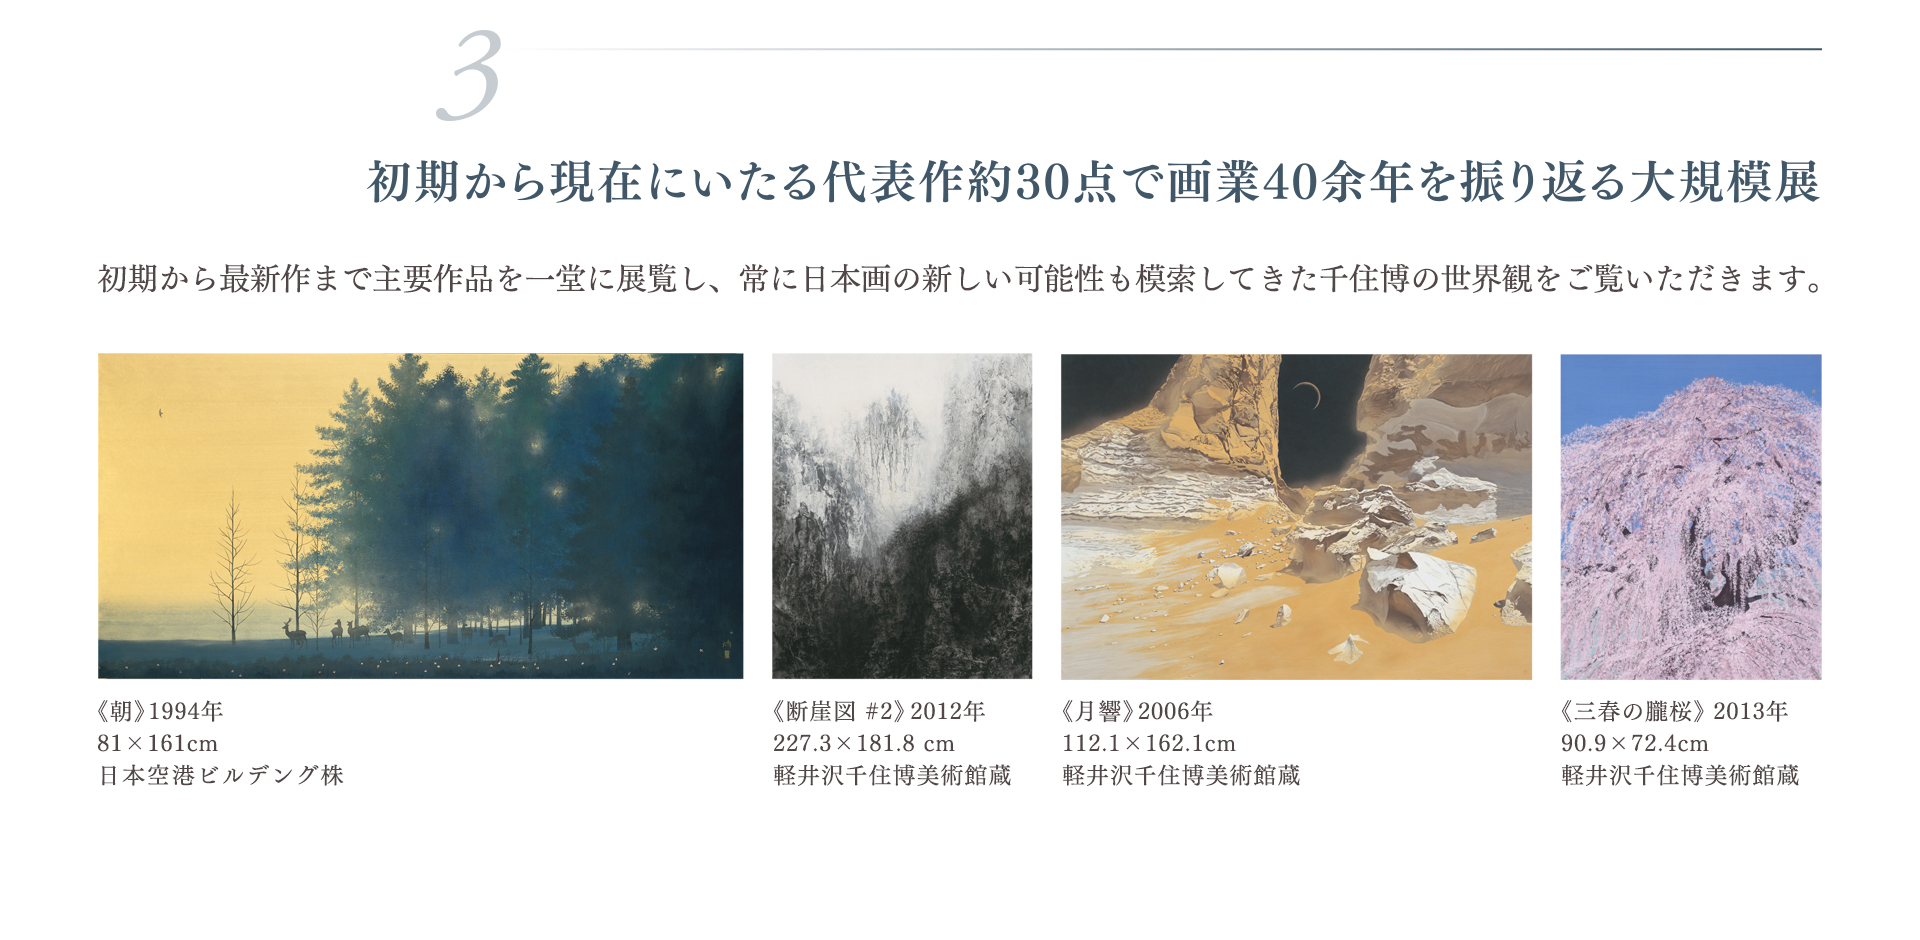 高野山金剛峯寺 襖絵完成記念 千住 博展 ―日本の美を極め、世界の美を拓く―